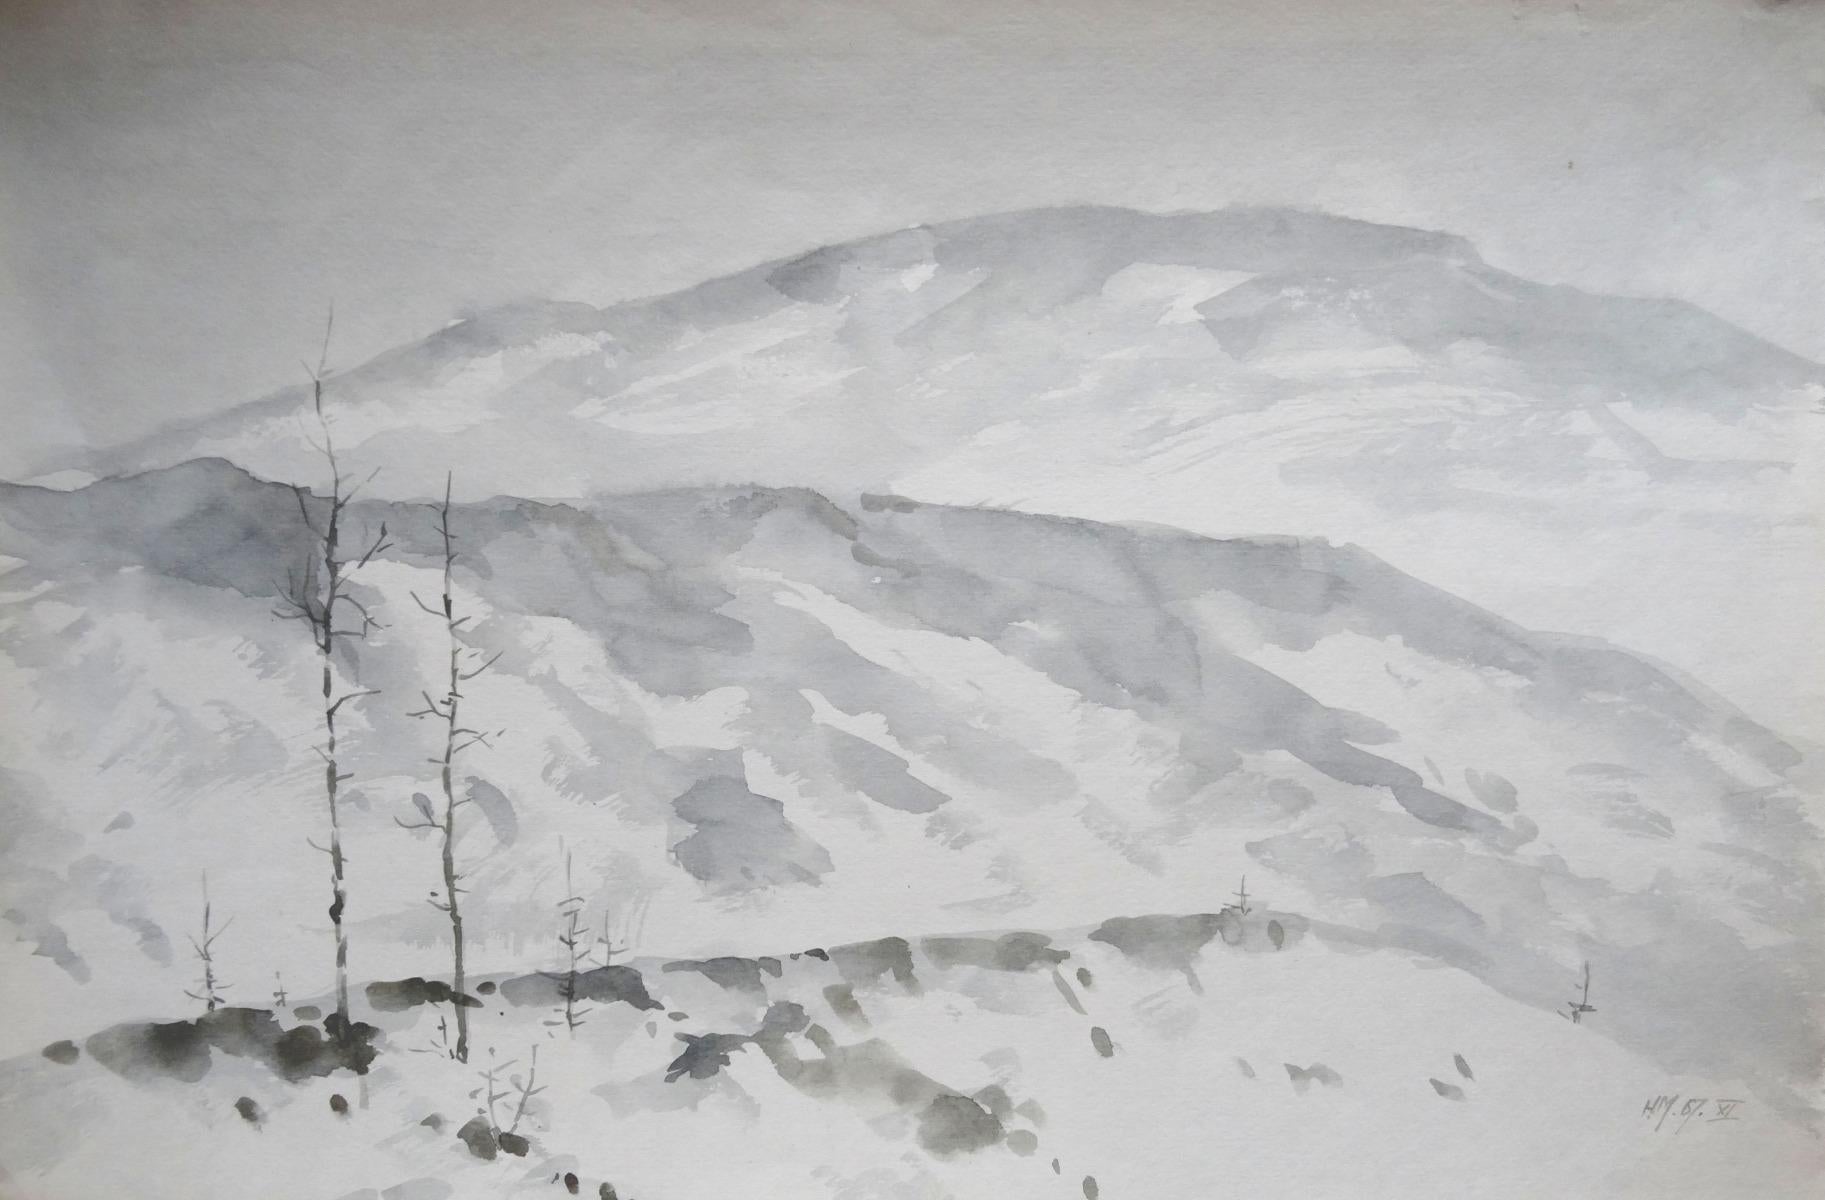 Herberts Mangolds Landscape Art - Winter  1967, paper/watercolor, 31x46.5 cm